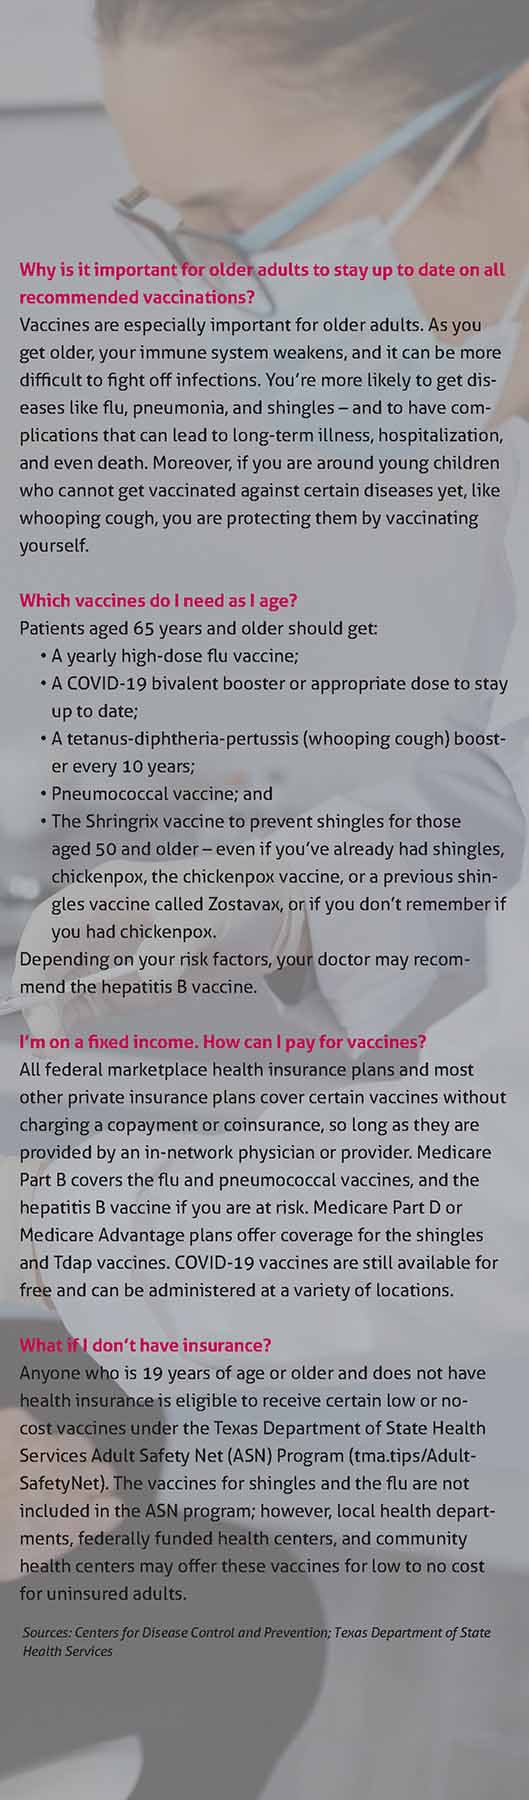 March_23_TM_Vaccines_QA